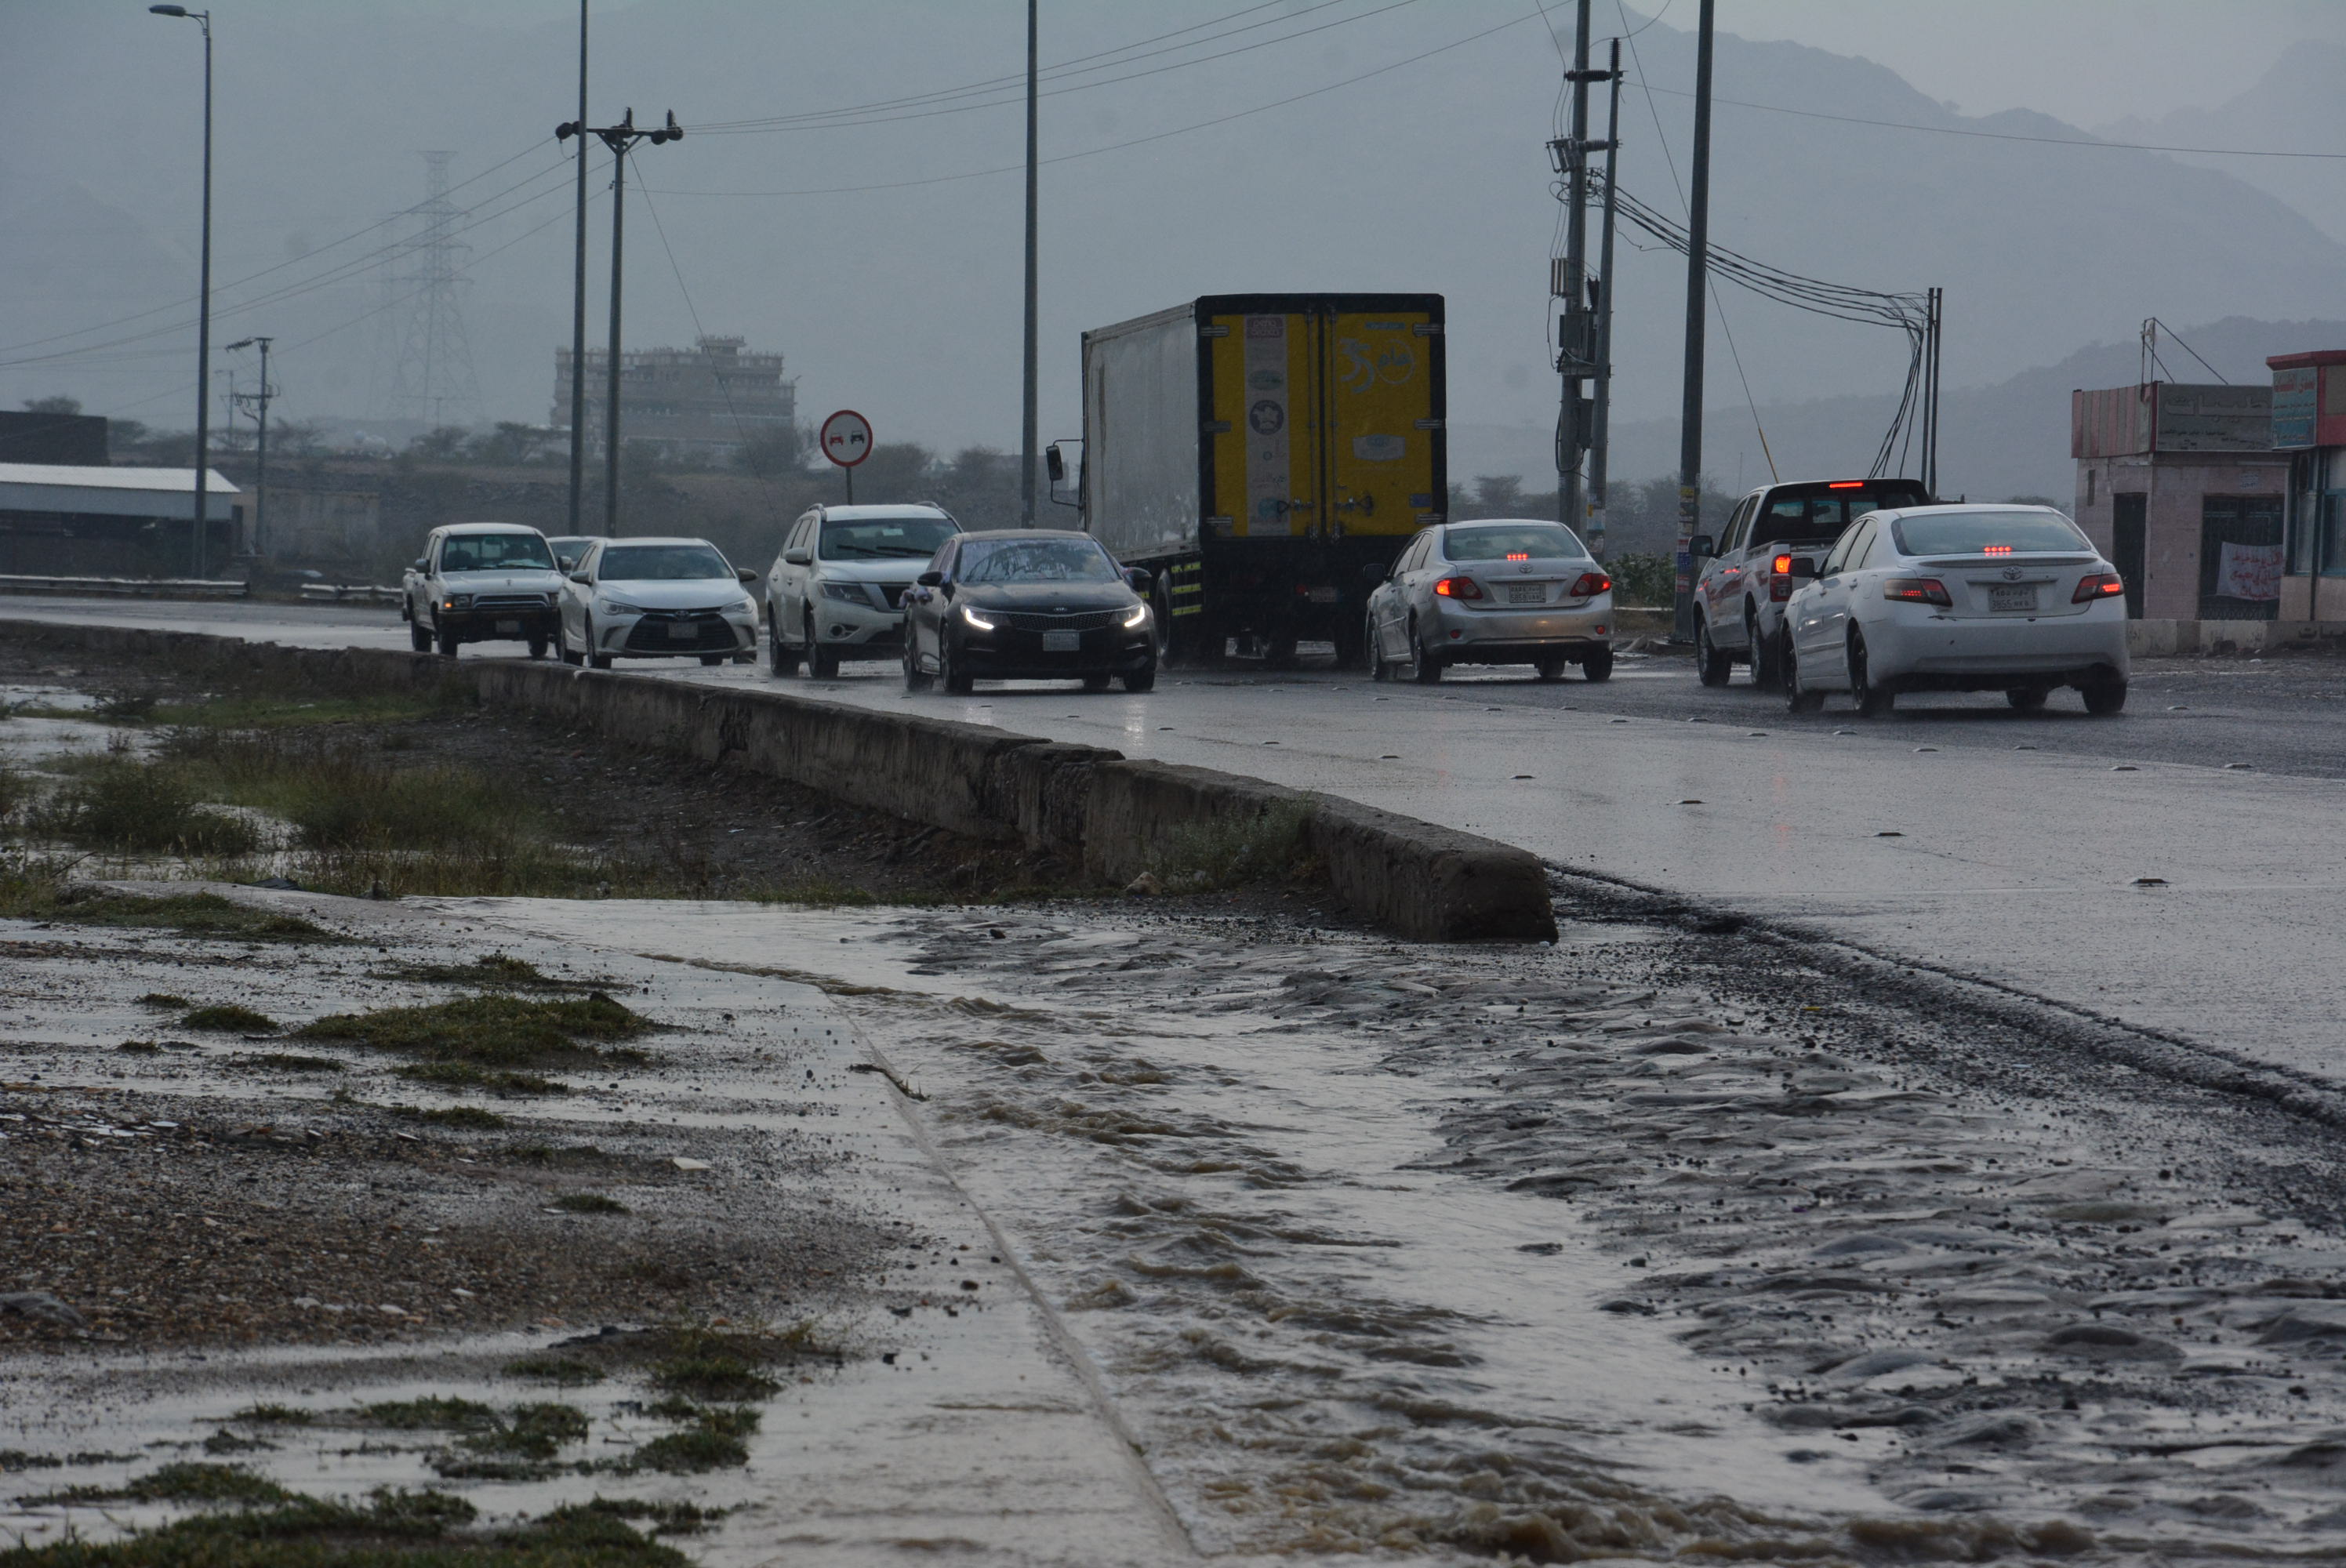 “المواطن” توثق بالصور.. أمطار متوسطة جنوب بارق تلطف الأجواء